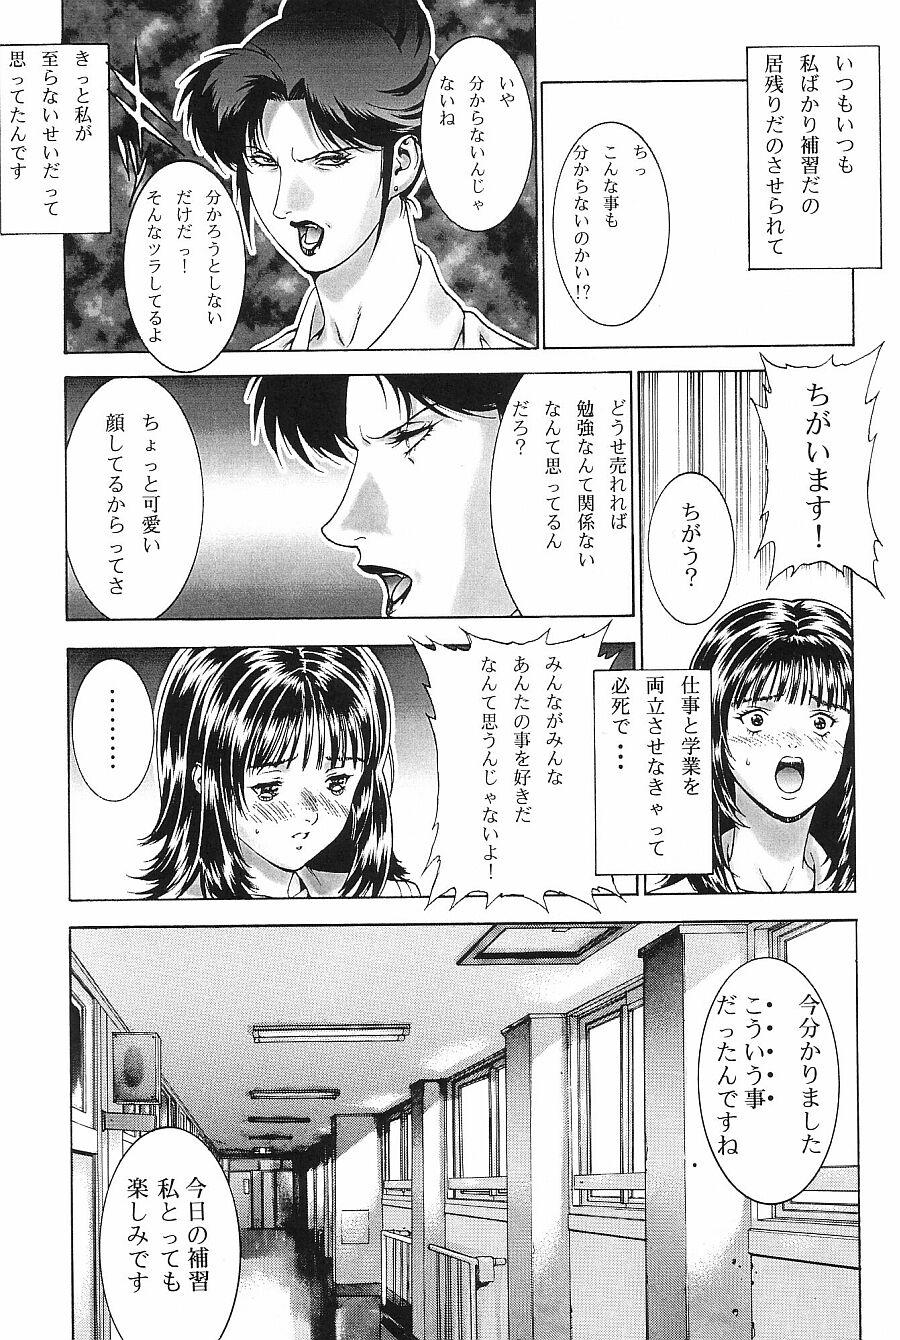 Caseiro Crazy-D Act 06 - Is Gundam 0083 Chupa - Page 11